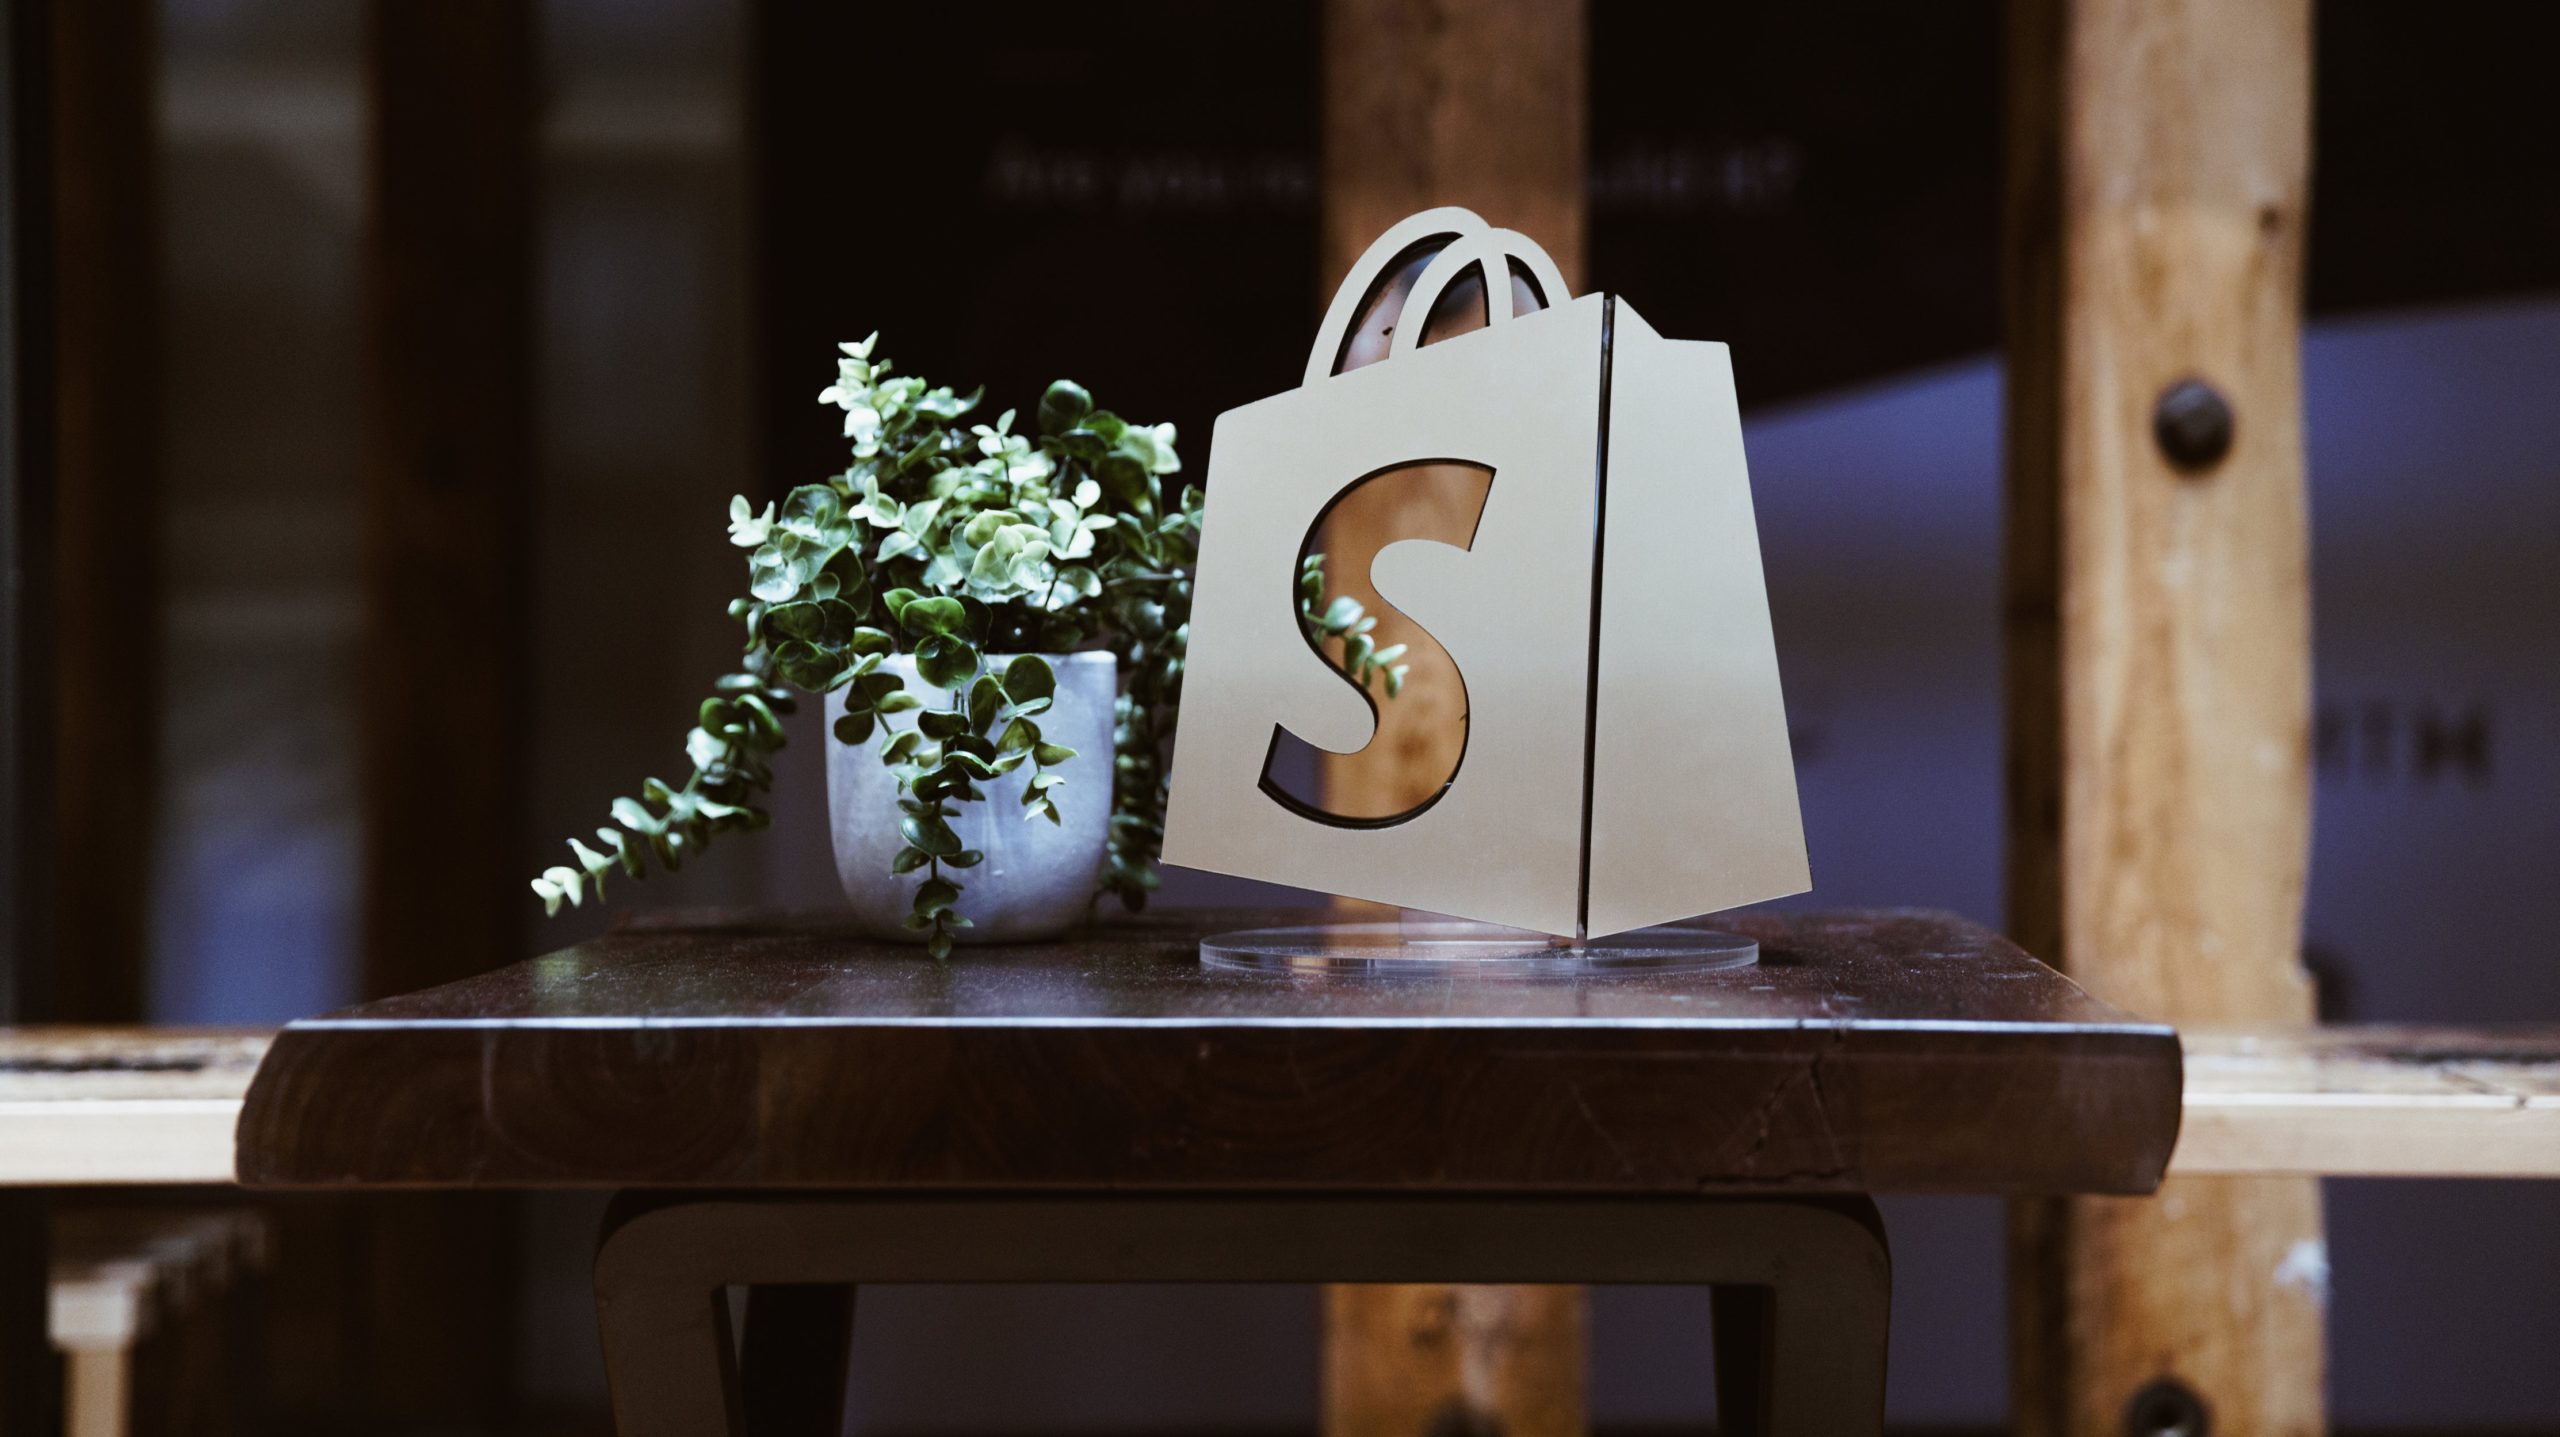 Darstellung des Shopify-Logos neben einer Pflanze auf einem Tisch